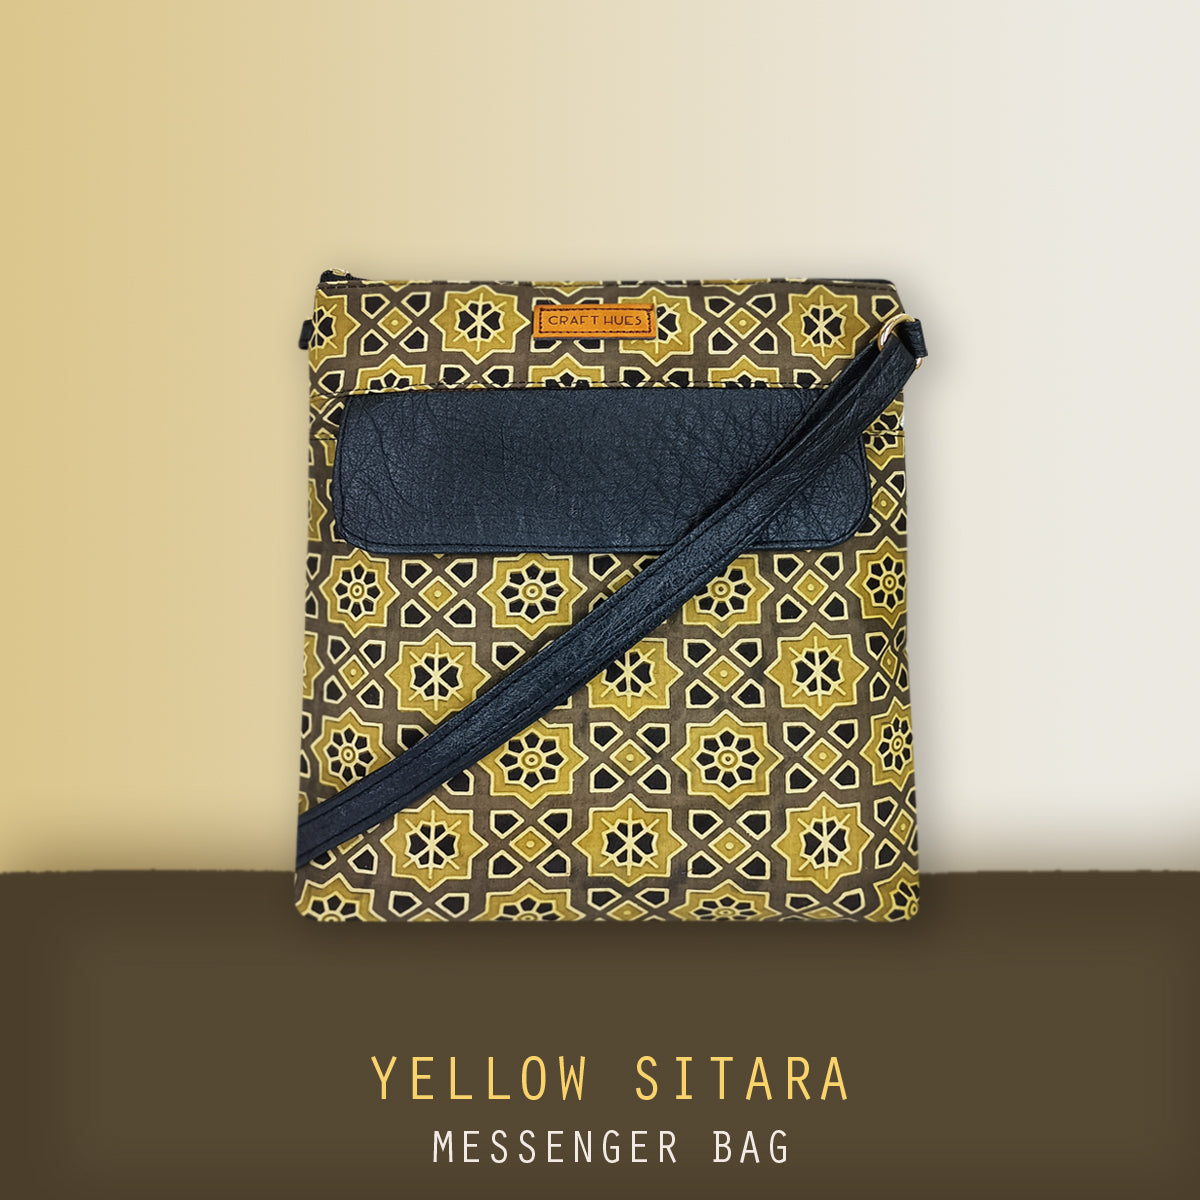 Yellow Sitara Messenger Bag